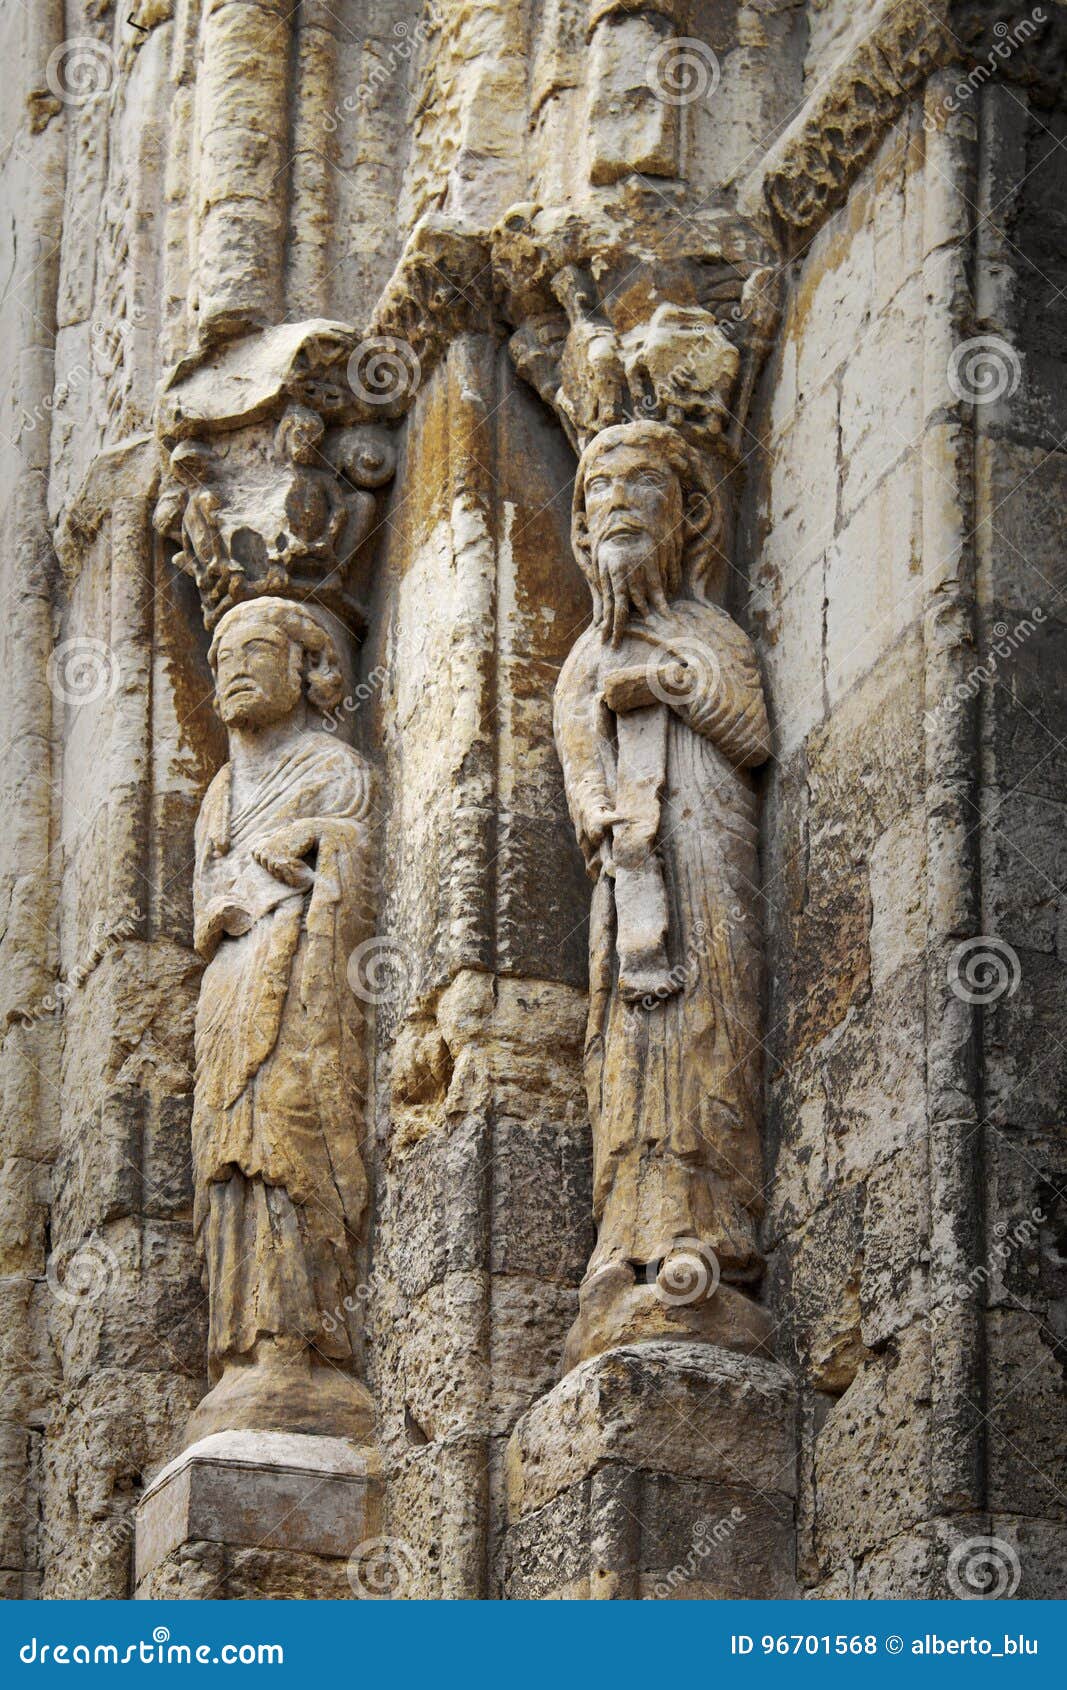 stone statues in san martin medieval church in segovia, spain